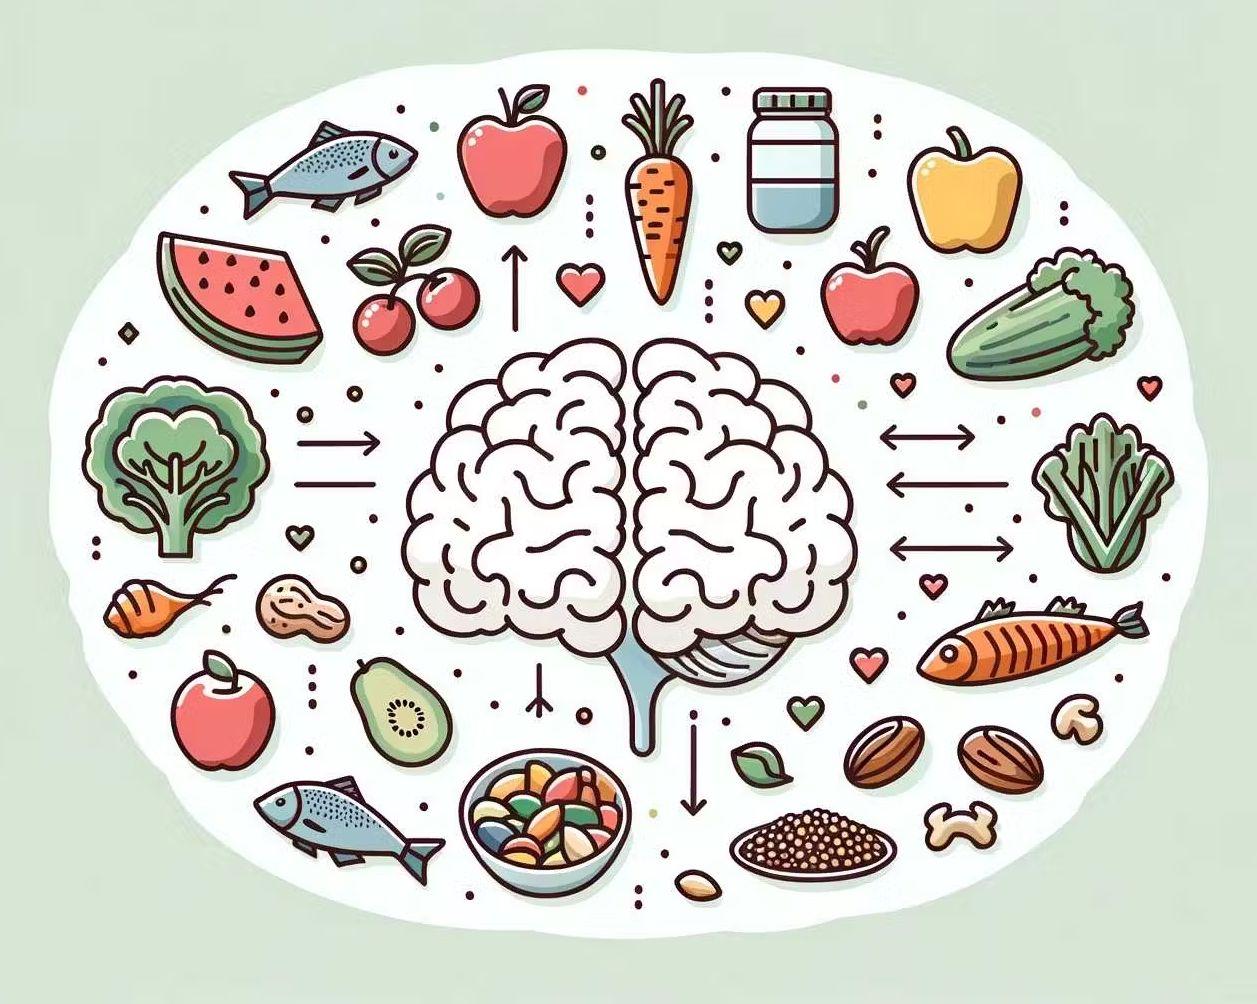 immagine che mostra il legame tra gli alimenti e il benessere psicologico